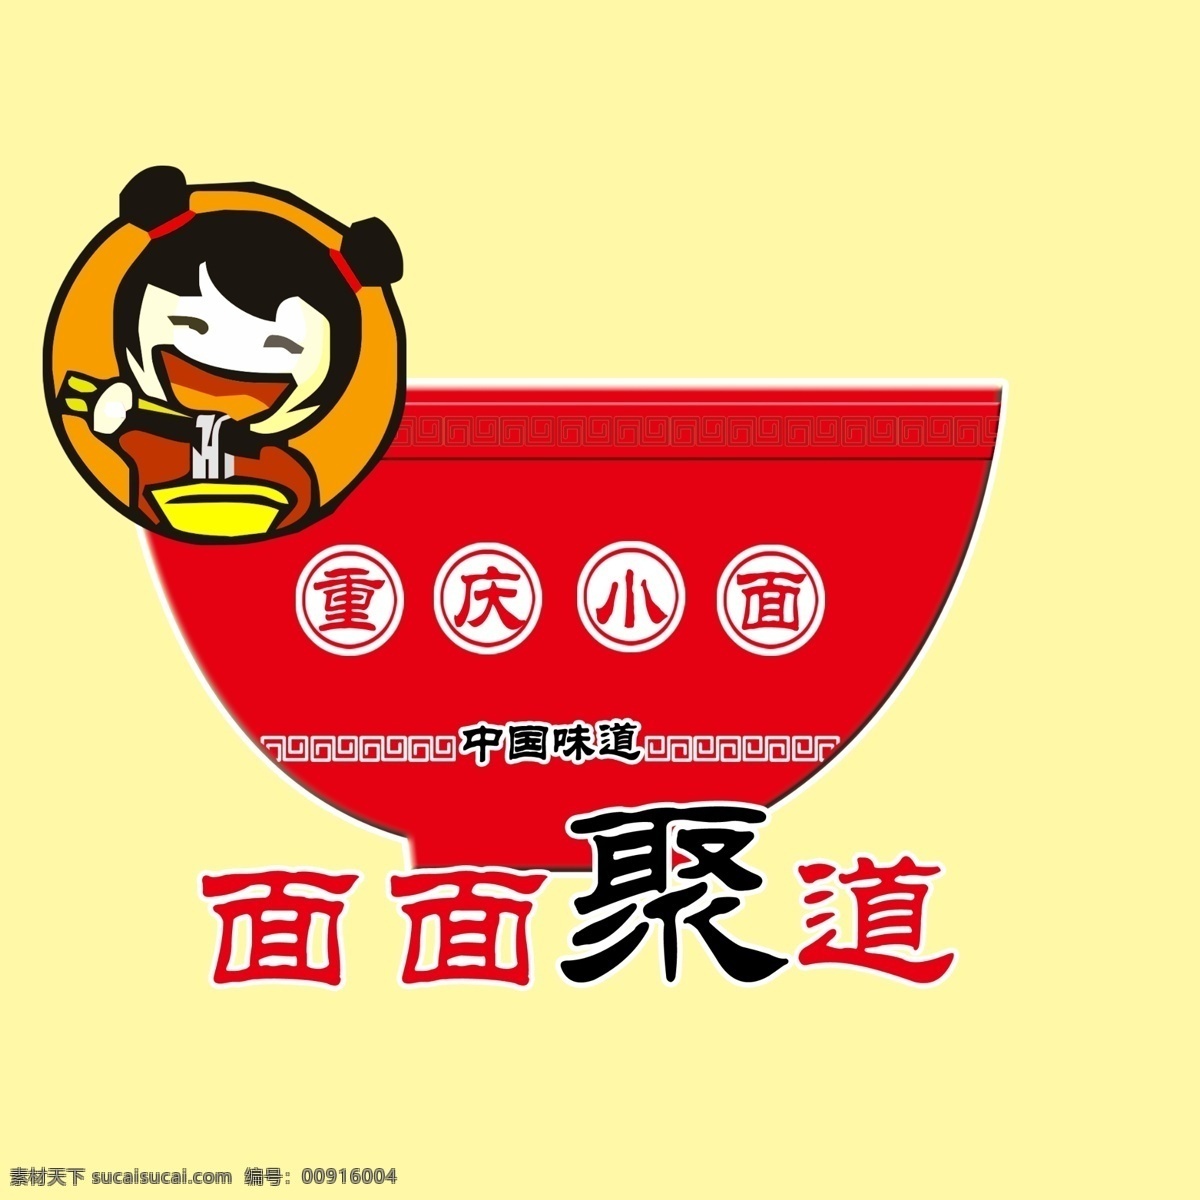 重庆 小 面食 拉面 包装设计 logo logo设计 广告设计模板 卡通 卡通小女孩 味道 重庆小面 拉拉面 四川酸辣面 地味 snowfly psd源文件